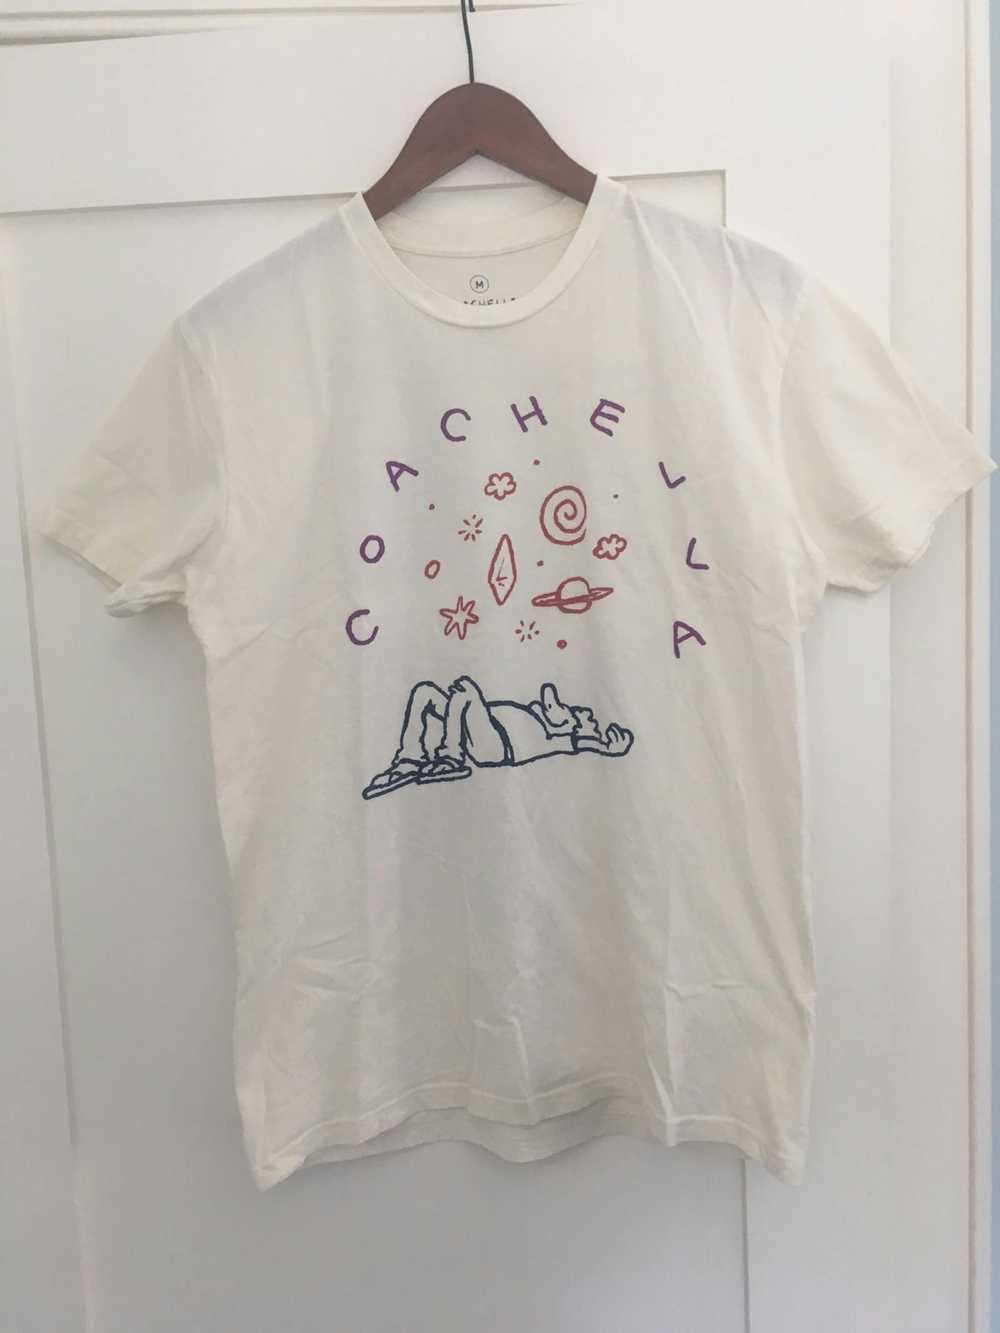 Coachella Coachella 2016 T-shirt Medium - image 4